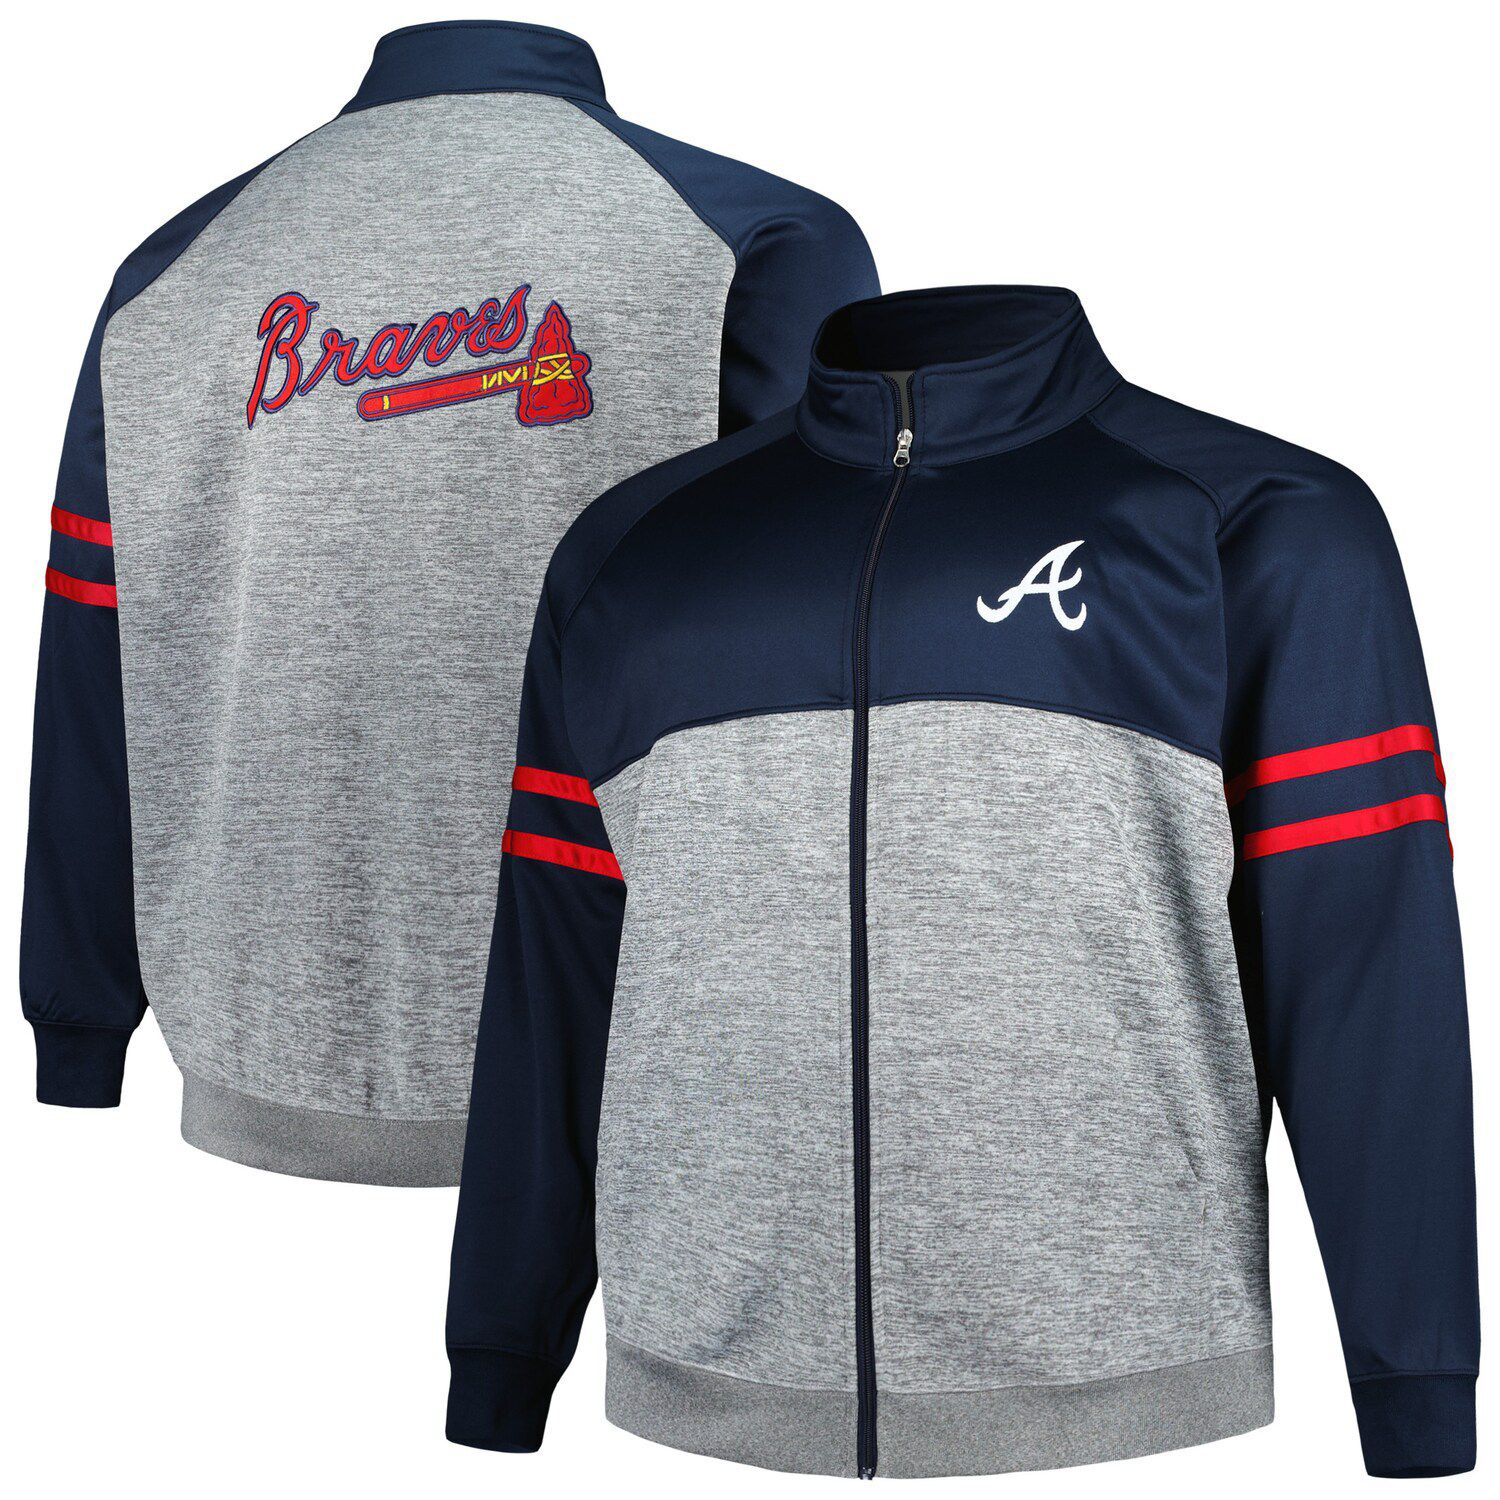 Men's Nike Red/Navy Atlanta Braves Overview Half-Zip Hoodie Jacket